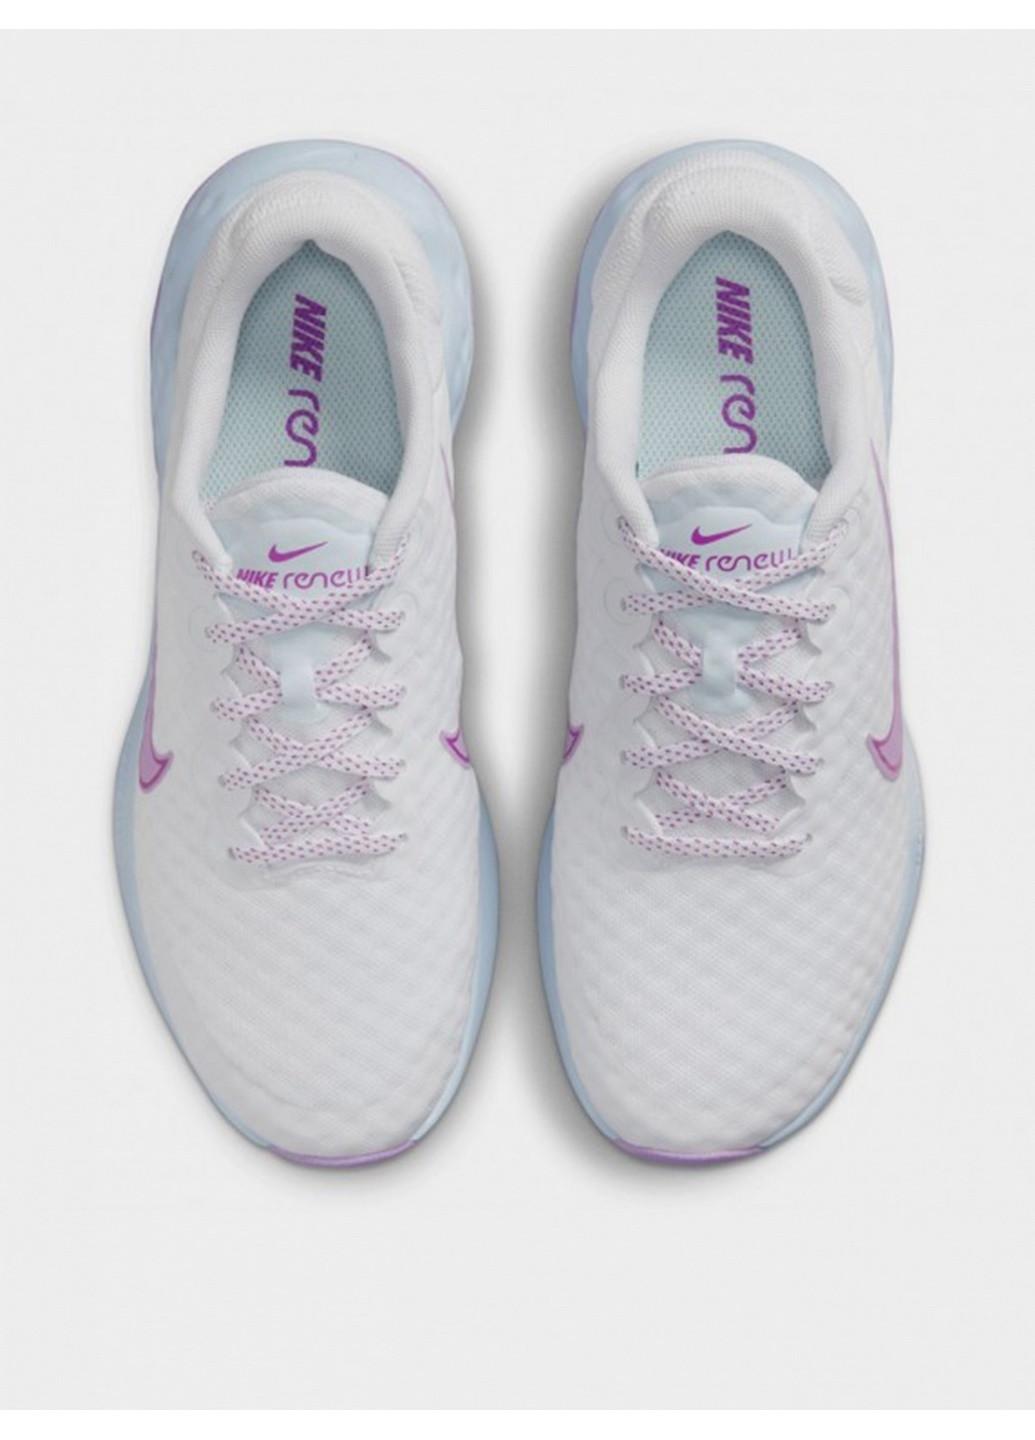 Фиолетовые демисезонные женские беговые кроссовки renew ride 3 dc8184-102 Nike